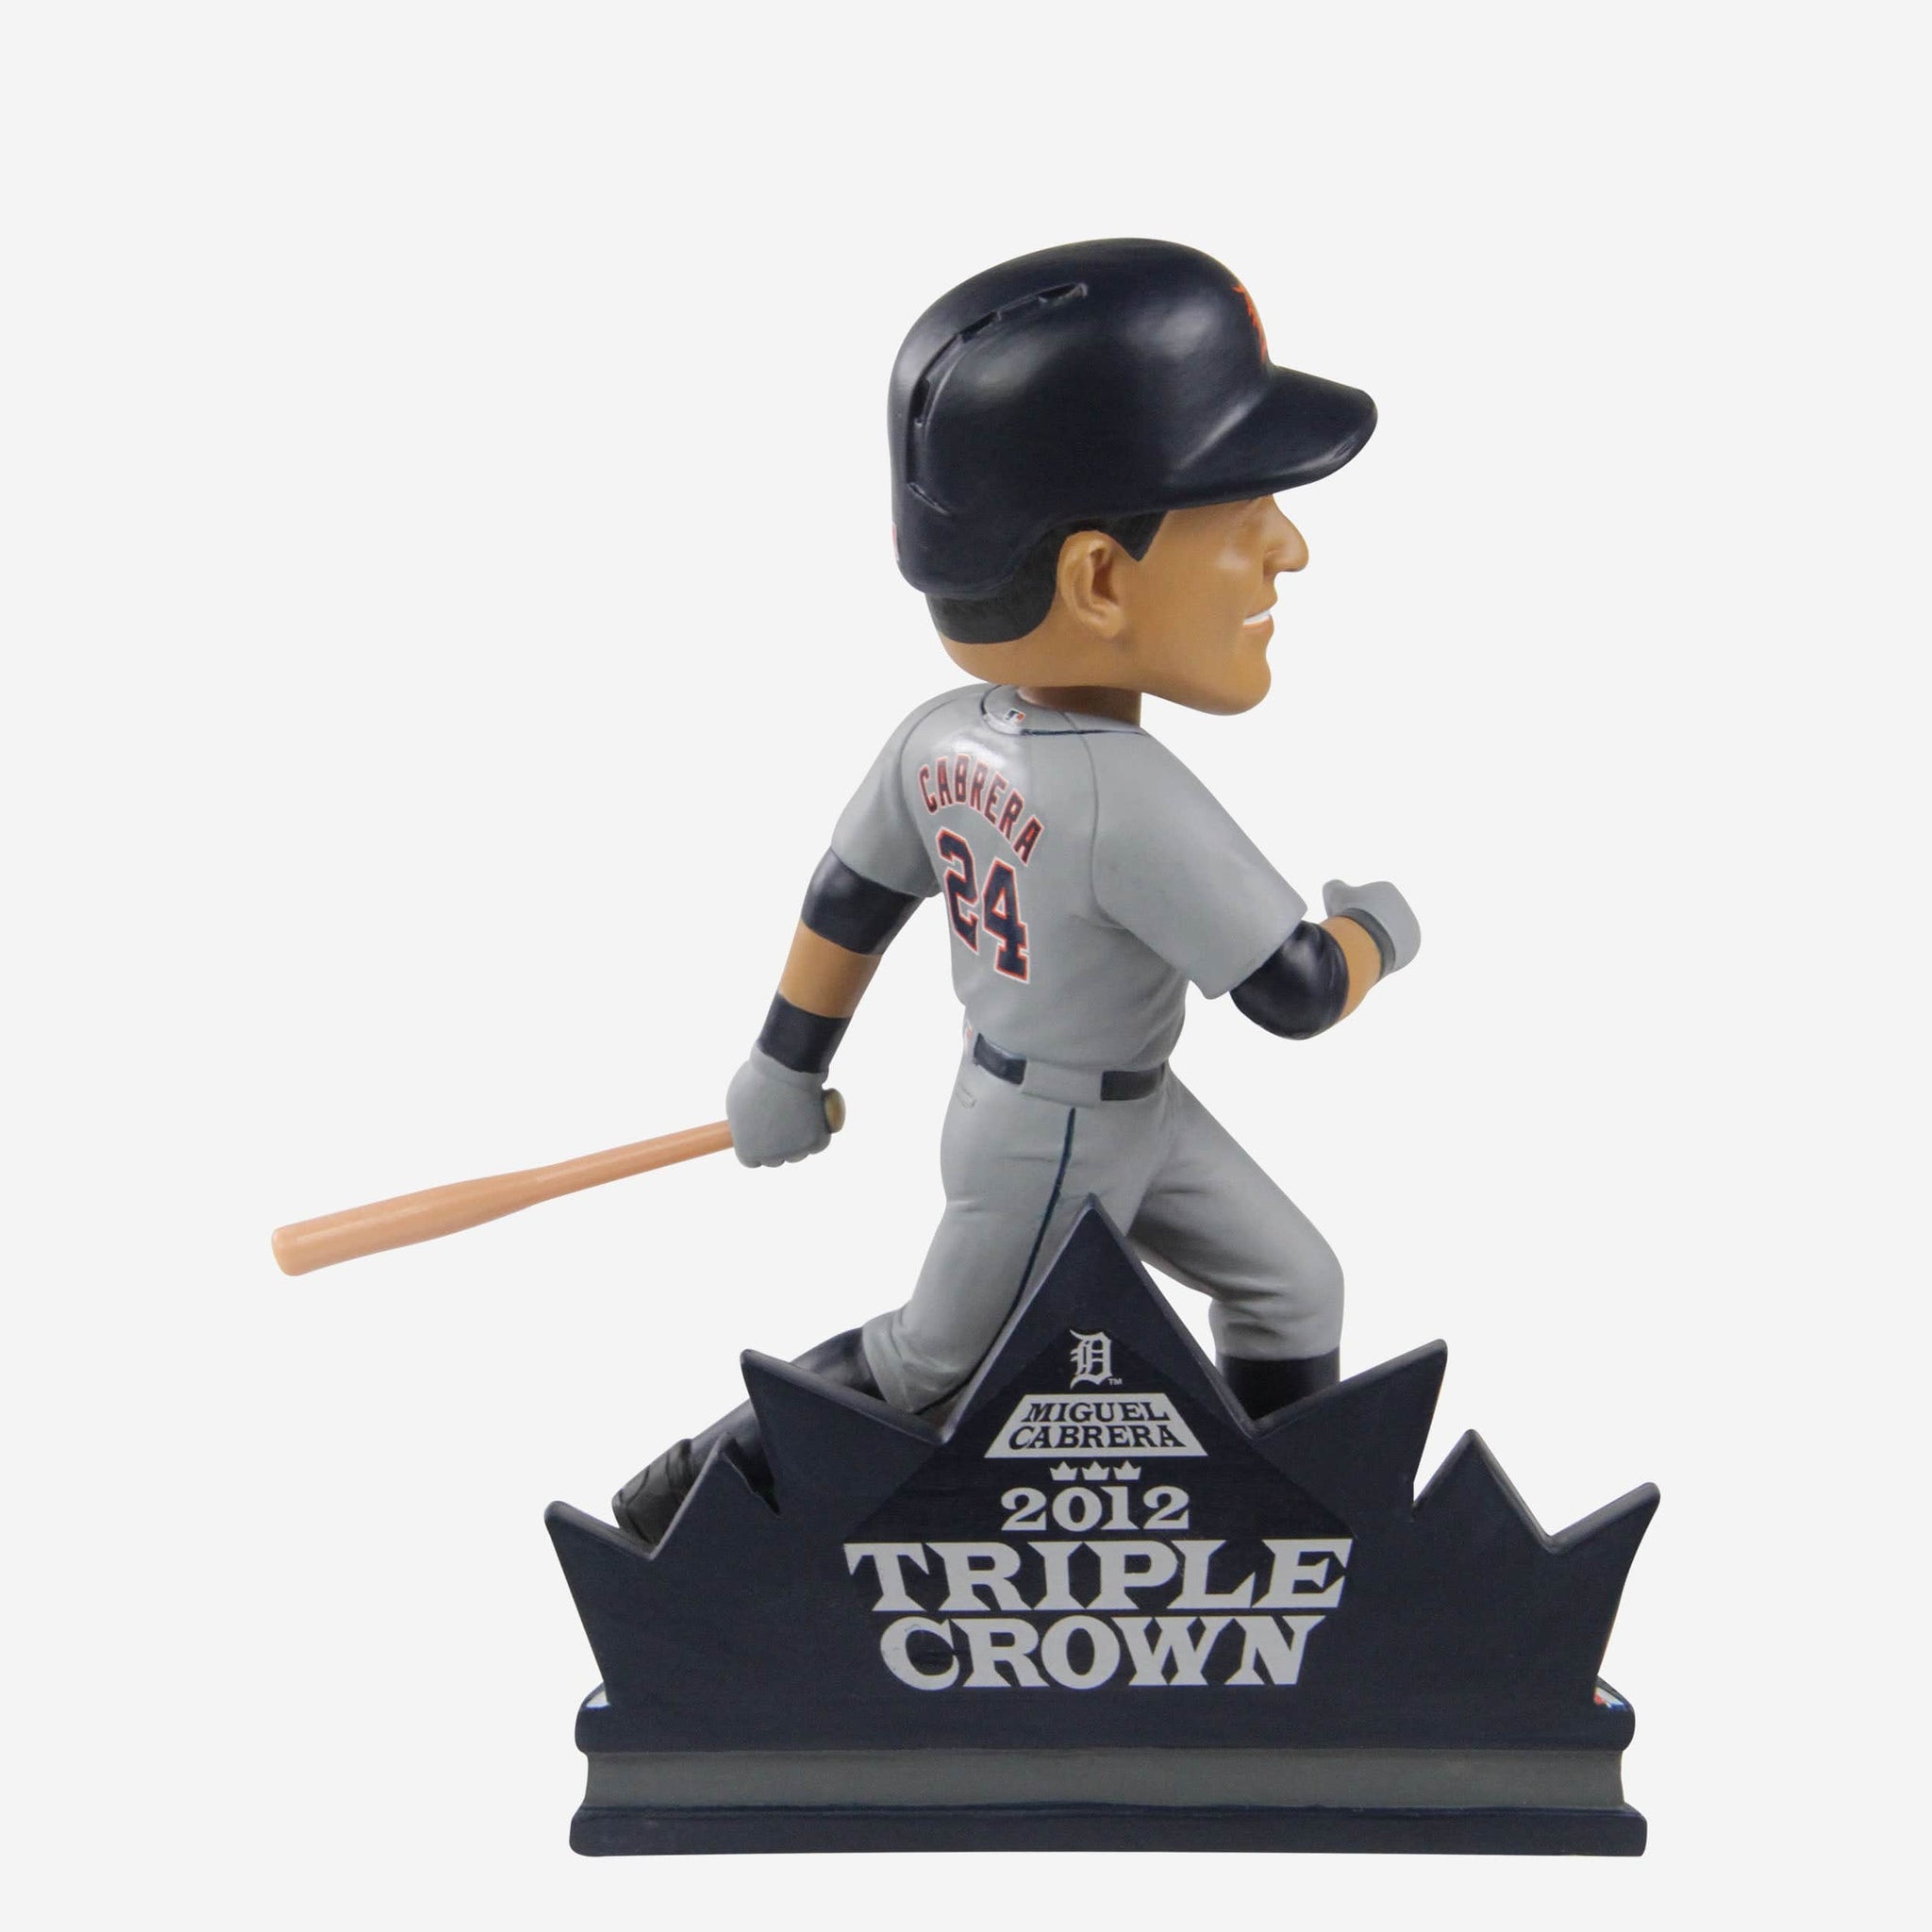 MLB unveils Miguel Cabrera's Triple Crown logo 